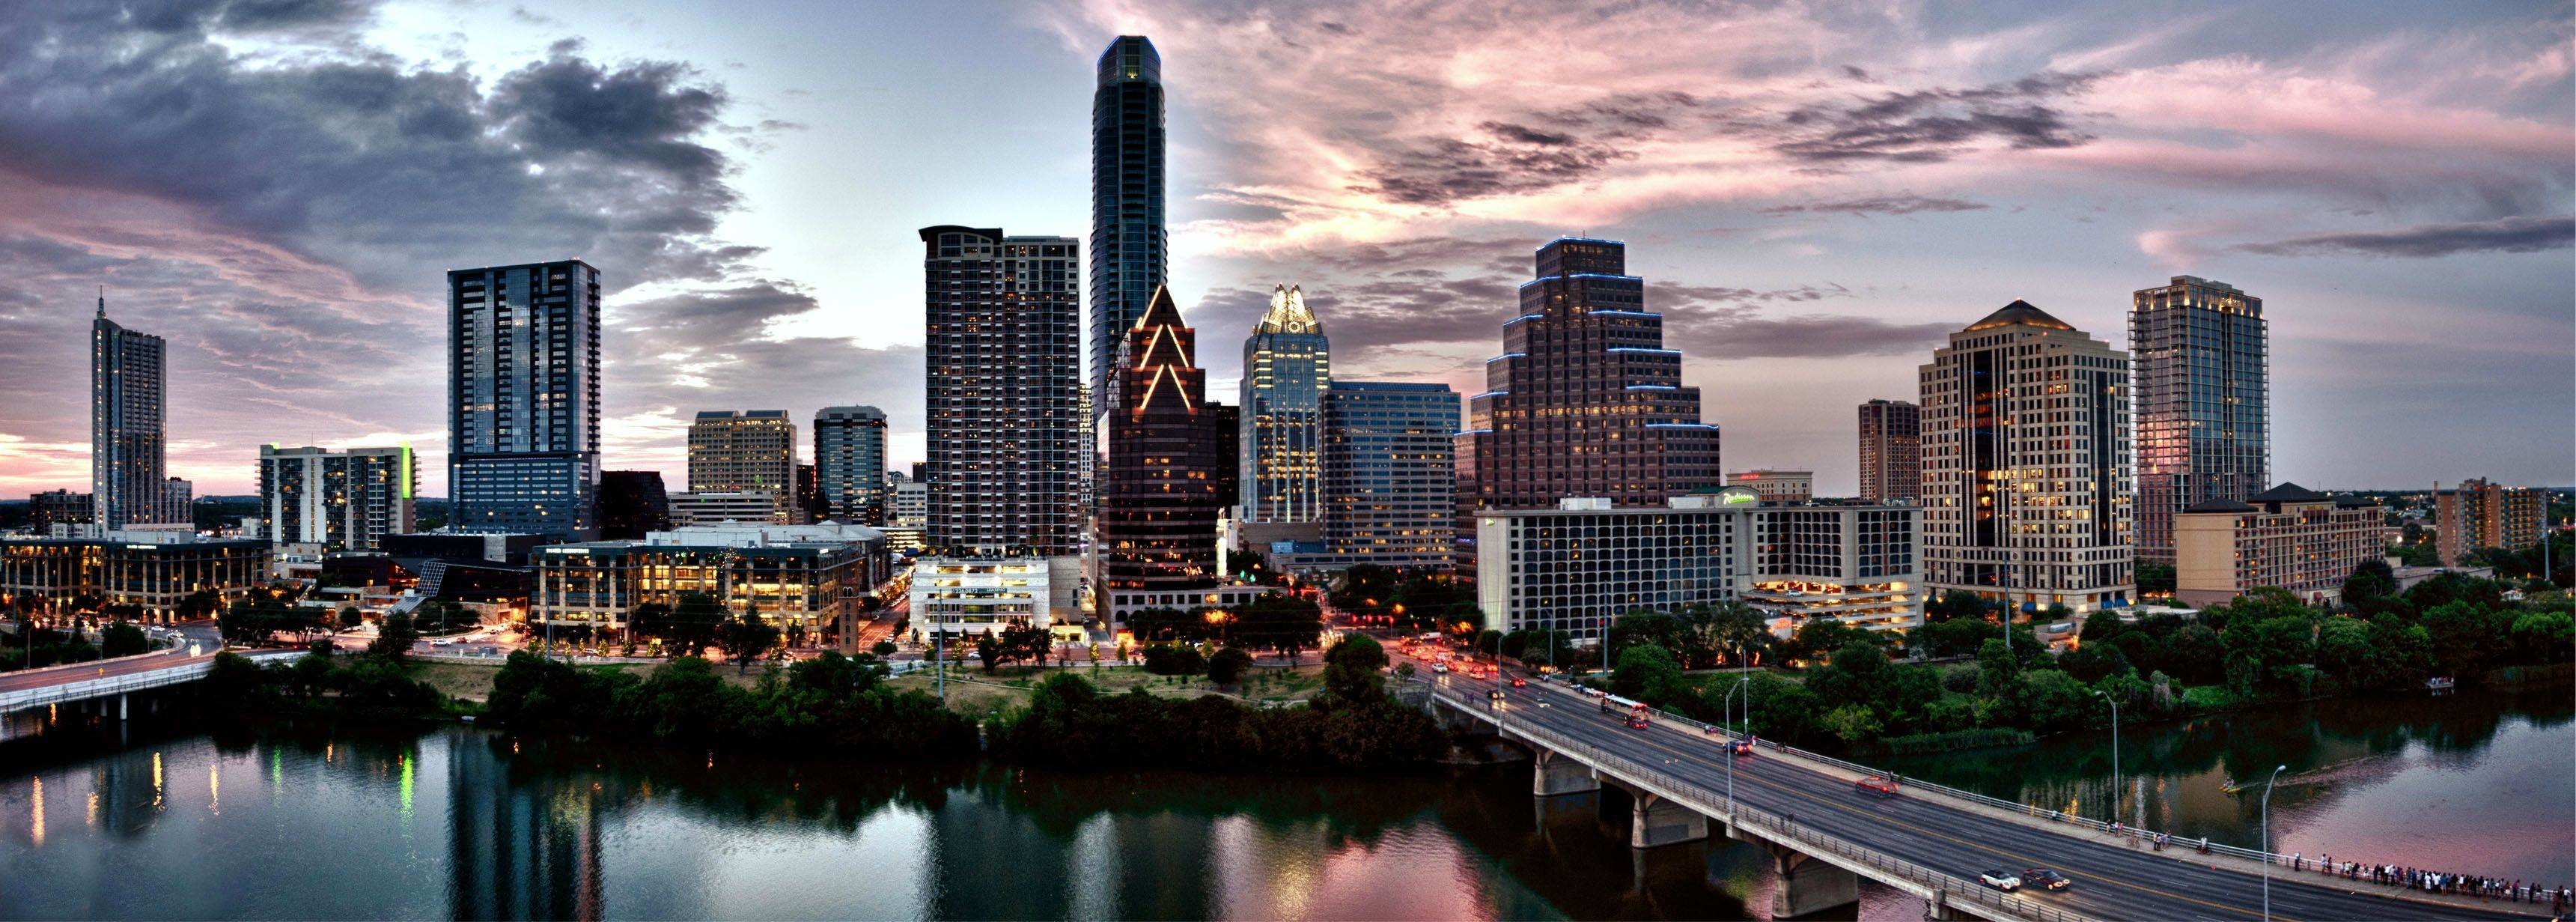 fond d'écran austin texas,ville,paysage urbain,zone métropolitaine,horizon,gratte ciel